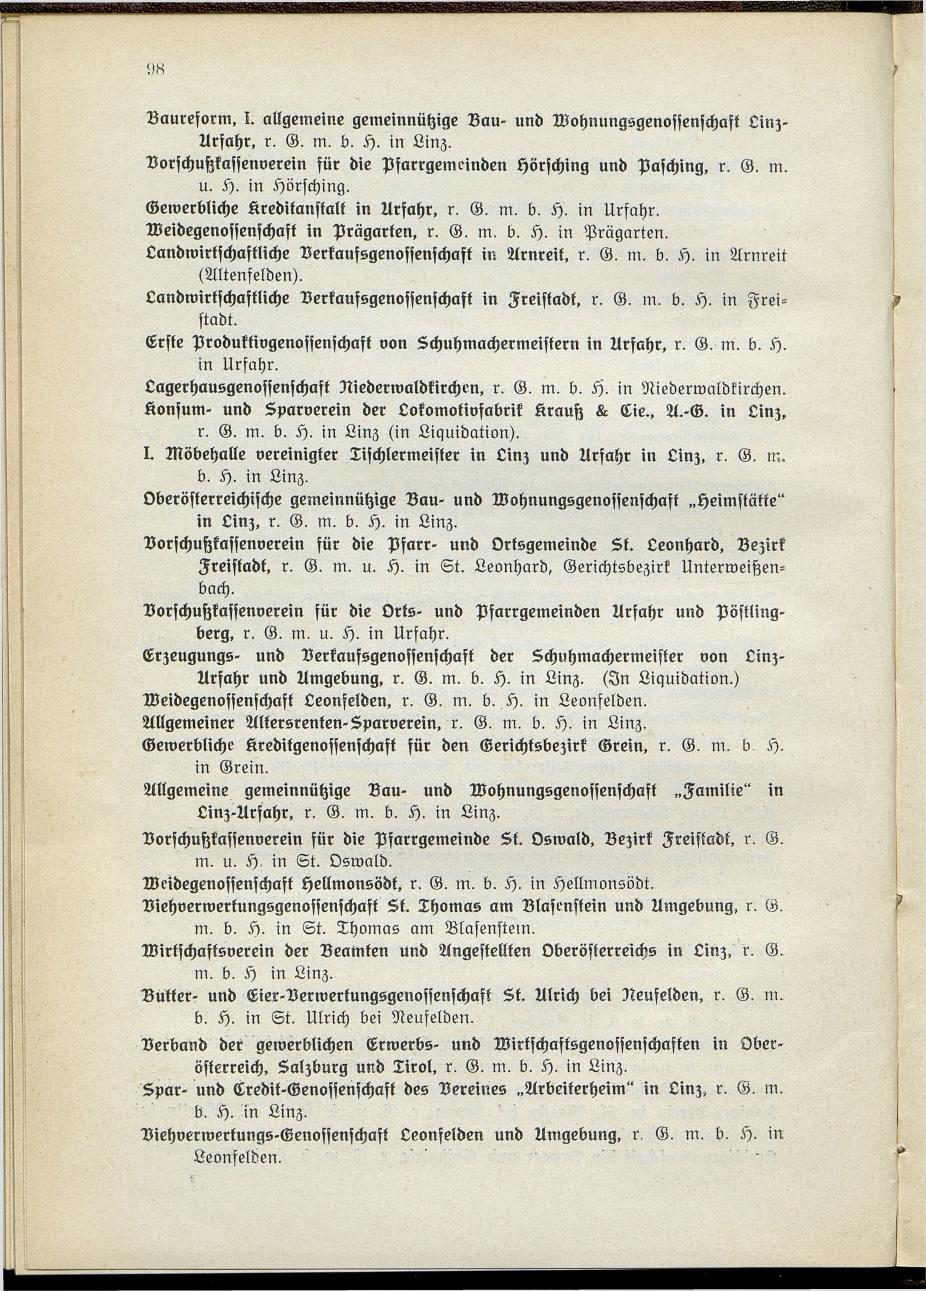 Verzeichnis der handelsgerichtlich protokollierten Firmen sowie der registrierten Erwerbs- und Wirtschafts-Genossenschaften in Oberösterreich 1914 - Seite 100